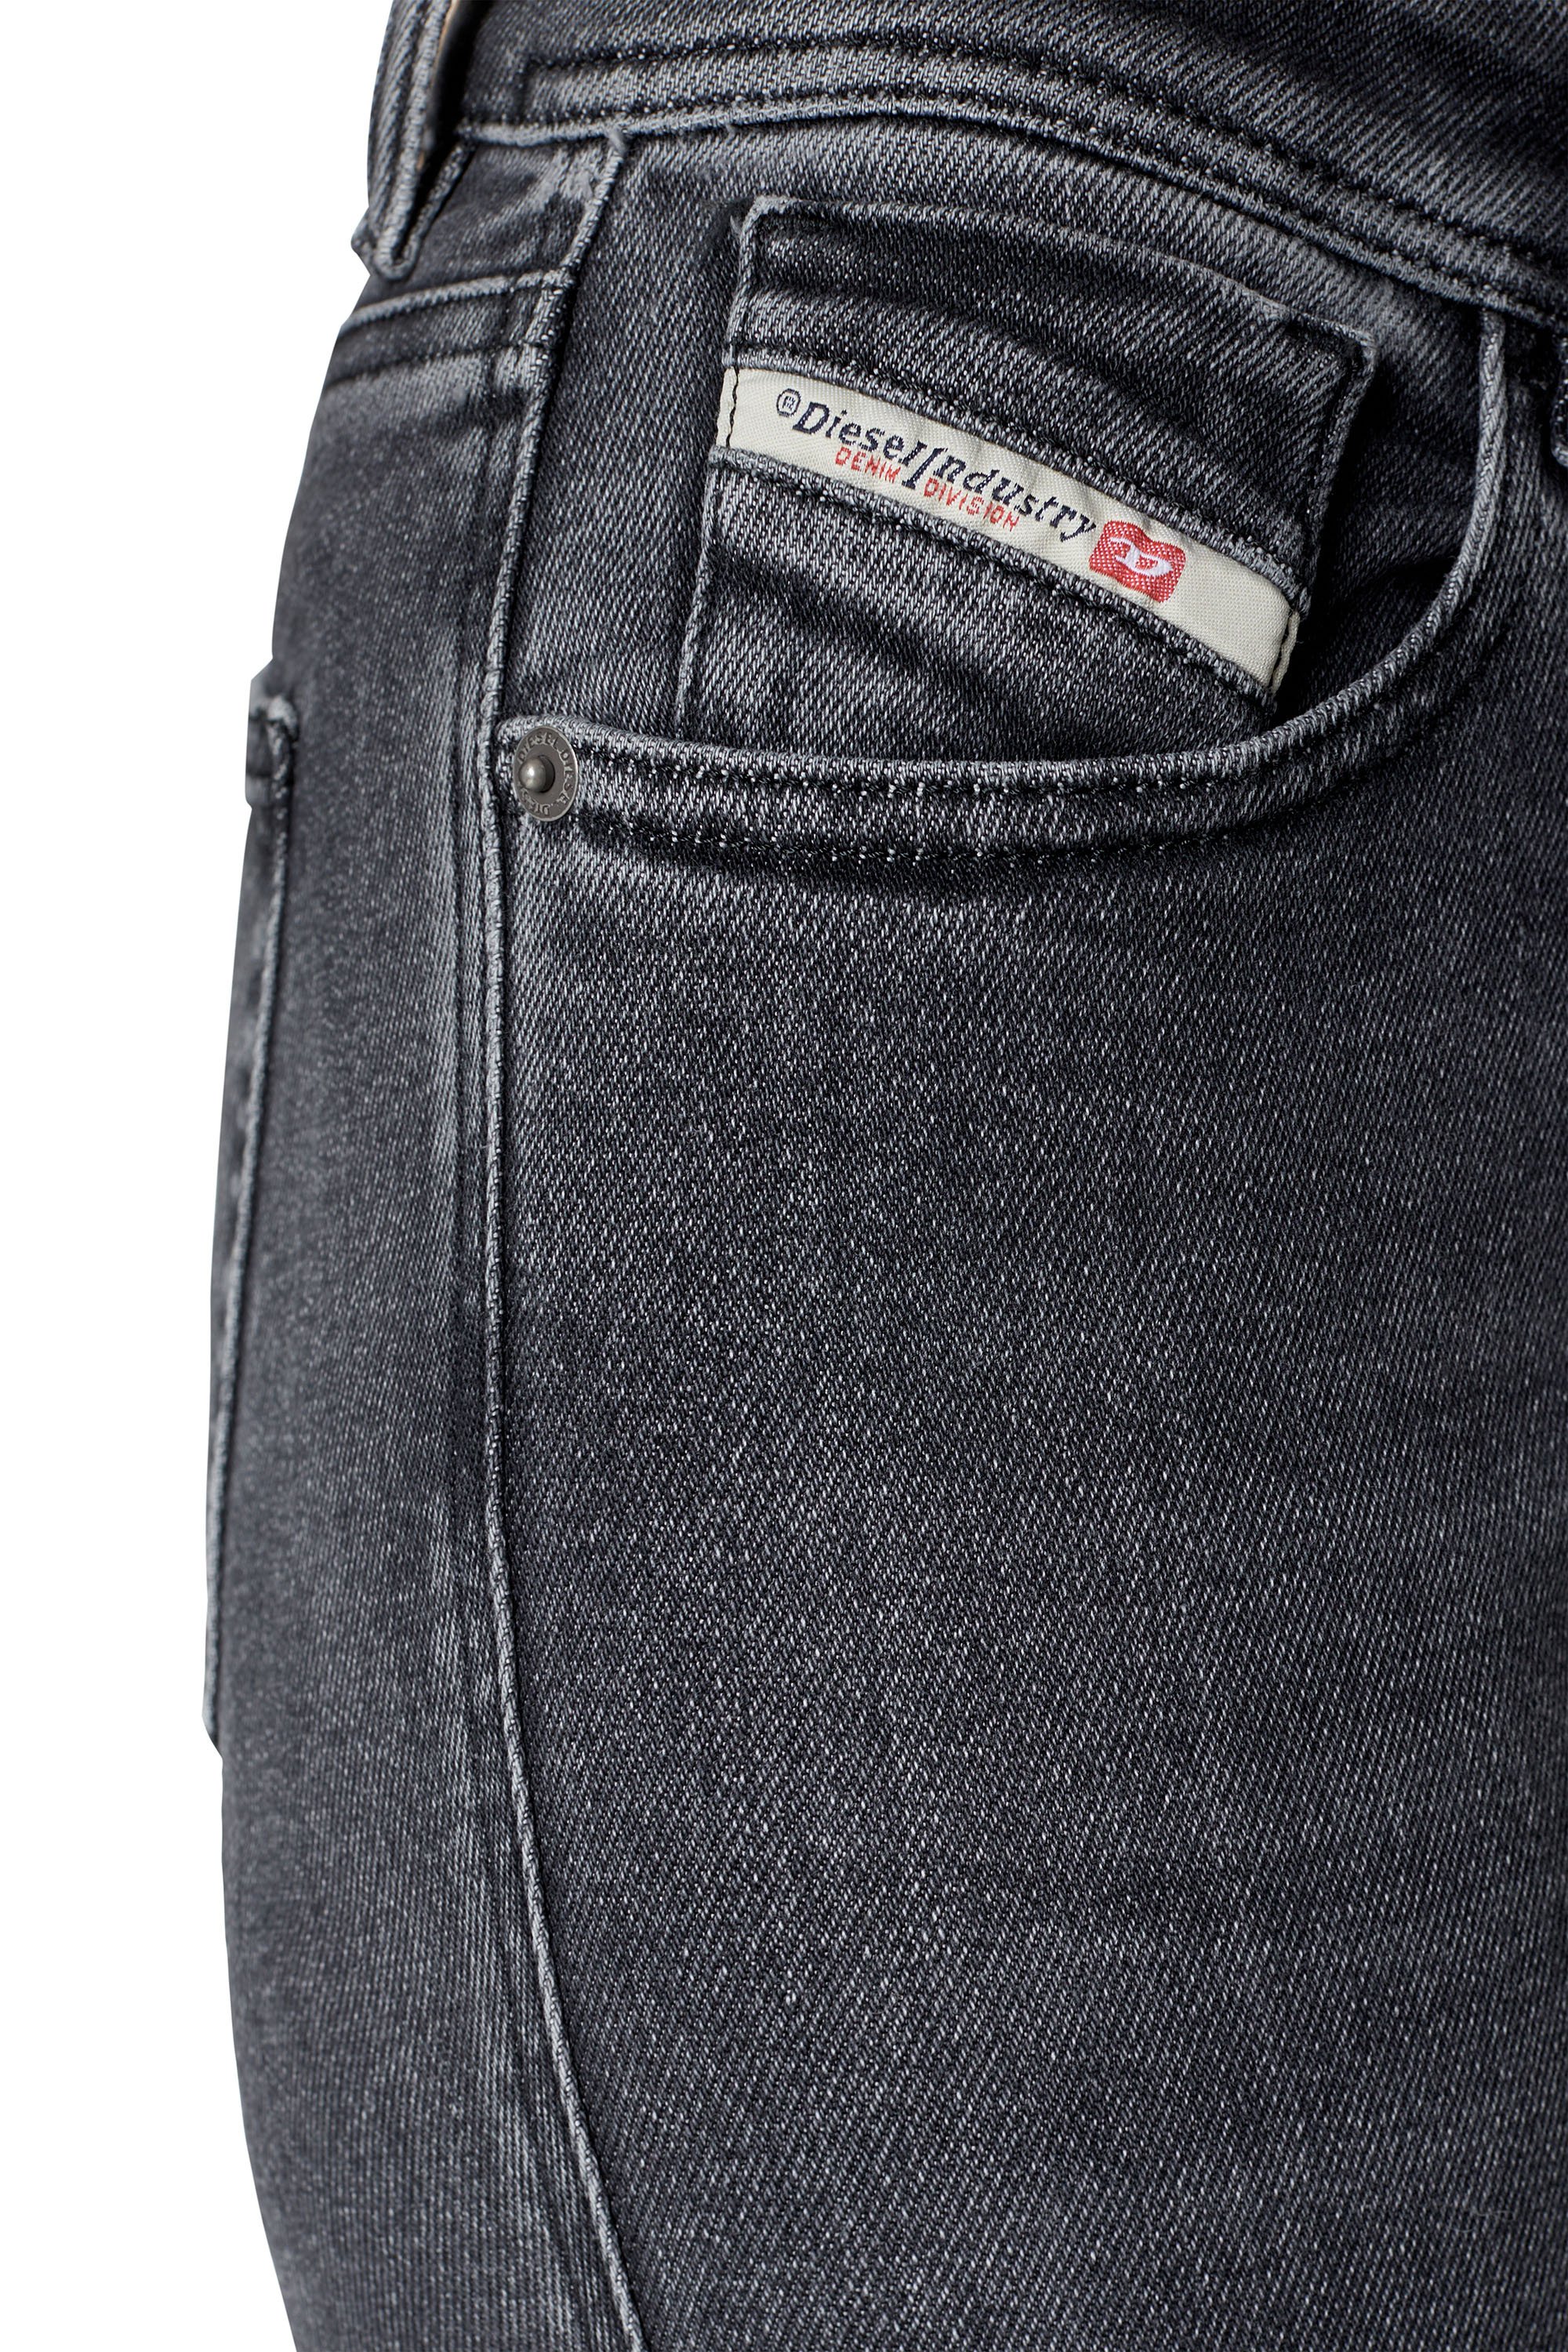 Diesel - Super skinny Jeans 2017 Slandy 09D61, Black/Dark grey - Image 3